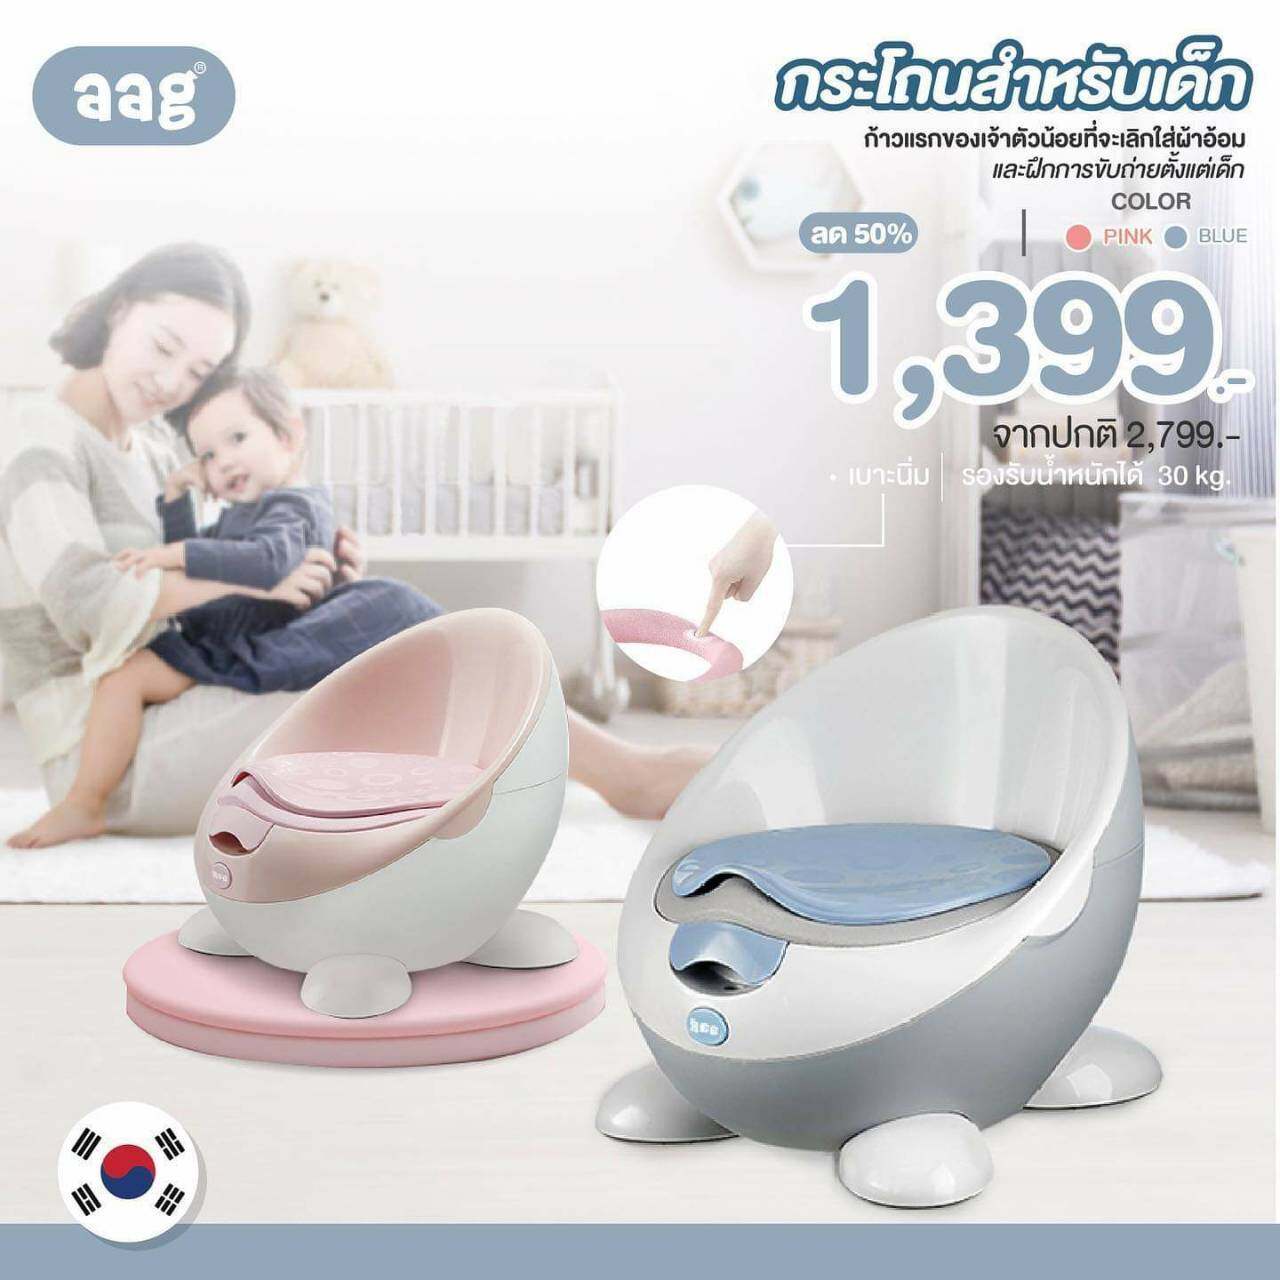 ราคา AAG (เอเอจี) Baby Chamber potty กระโถนสำหรับเด็ก รองรับน้ำหนักสูงสุด 30 กิโลกรัม ถอดทำตวามสะอาดง่าย